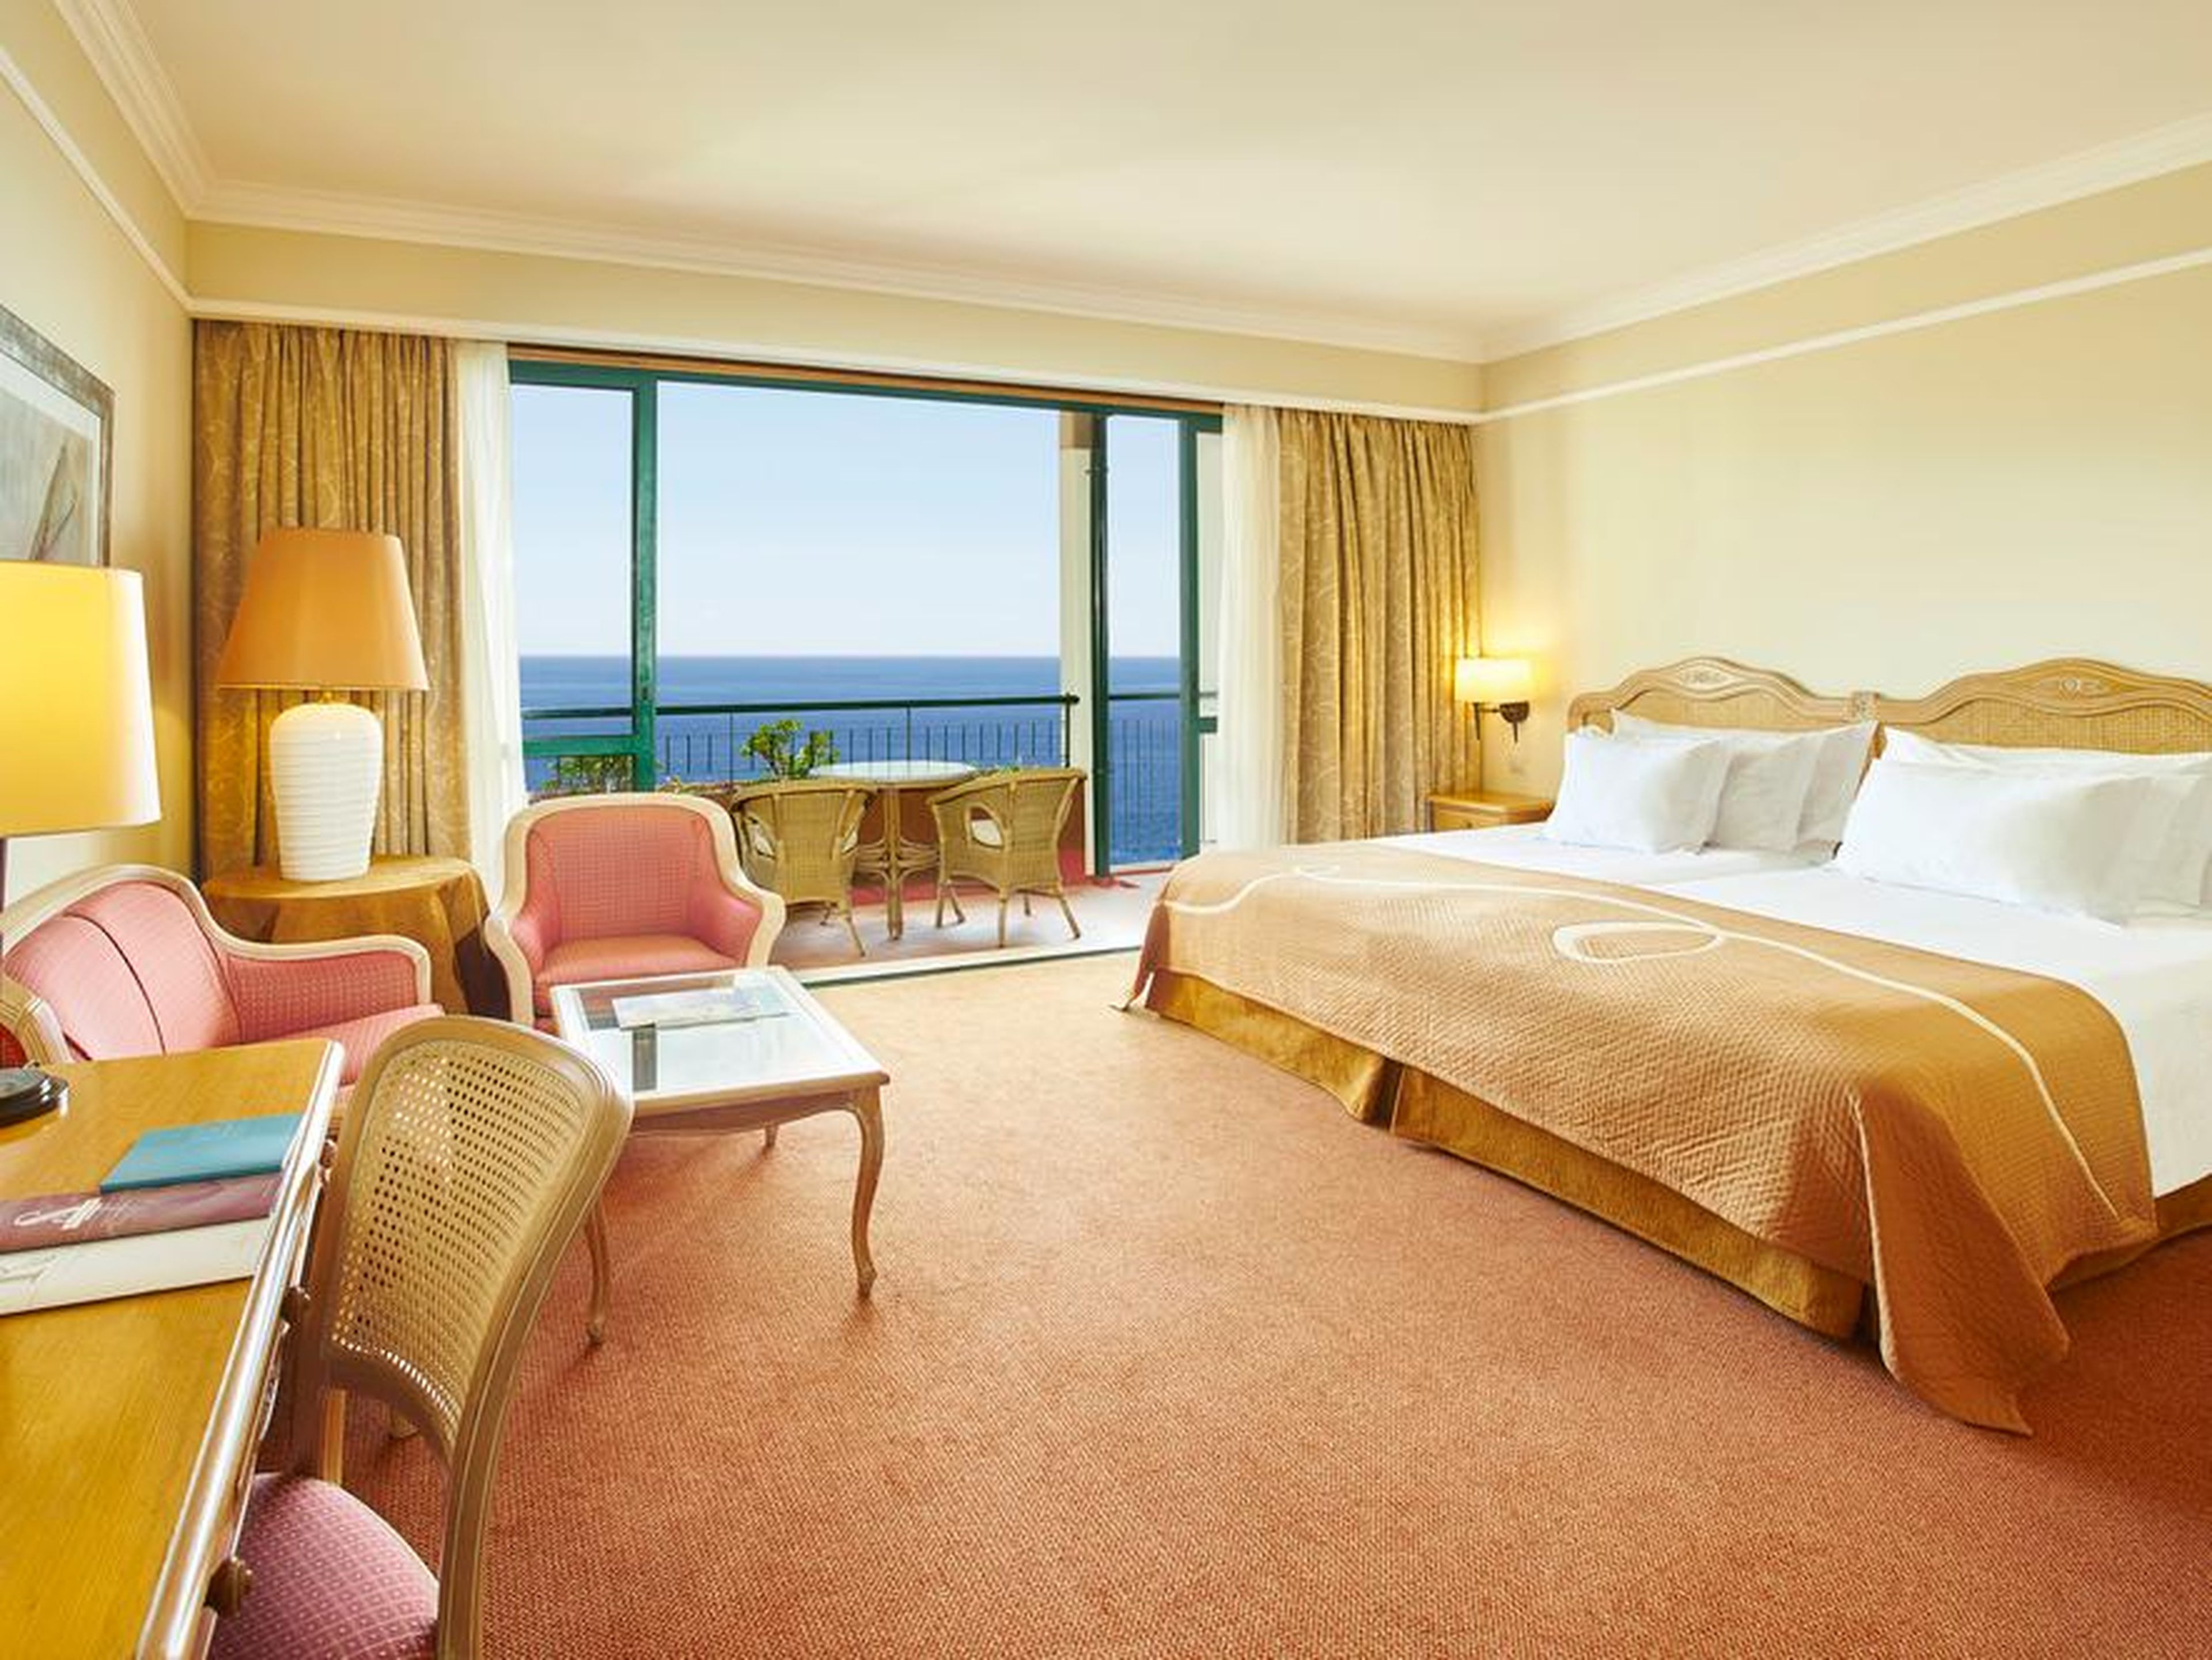 Gran suite en un resort isleño.